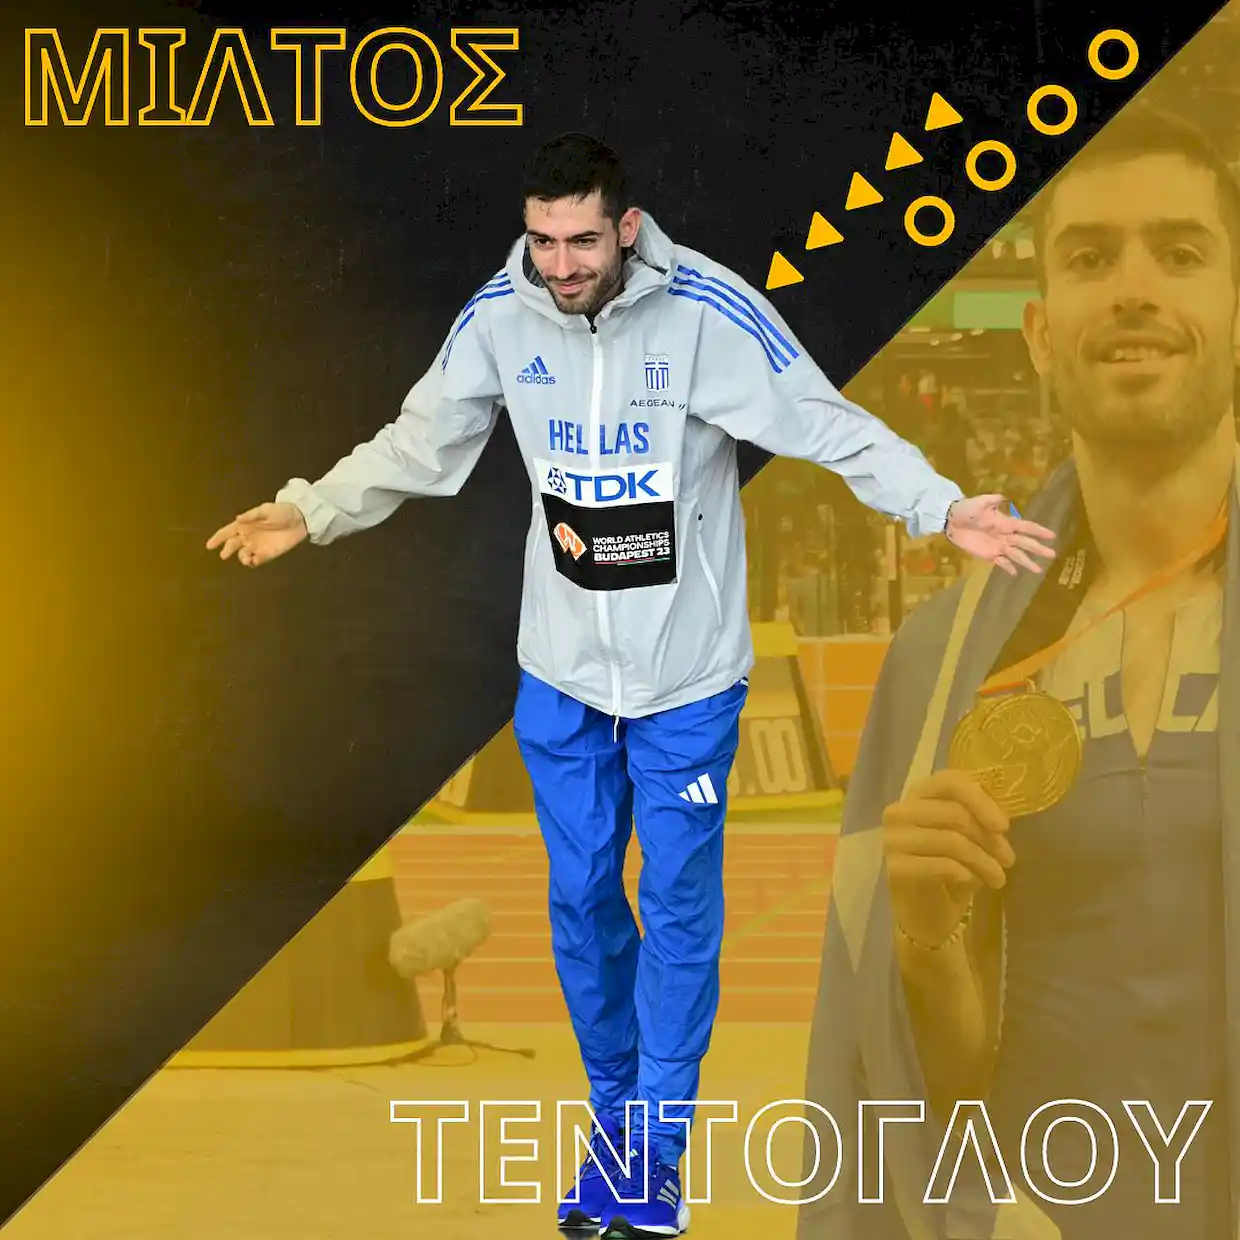 Μίλτος Τεντόγλου: Για τρίτη διαδοχική χρονιά καλύτερος αθλητής των Βαλκανίων στο στίβο